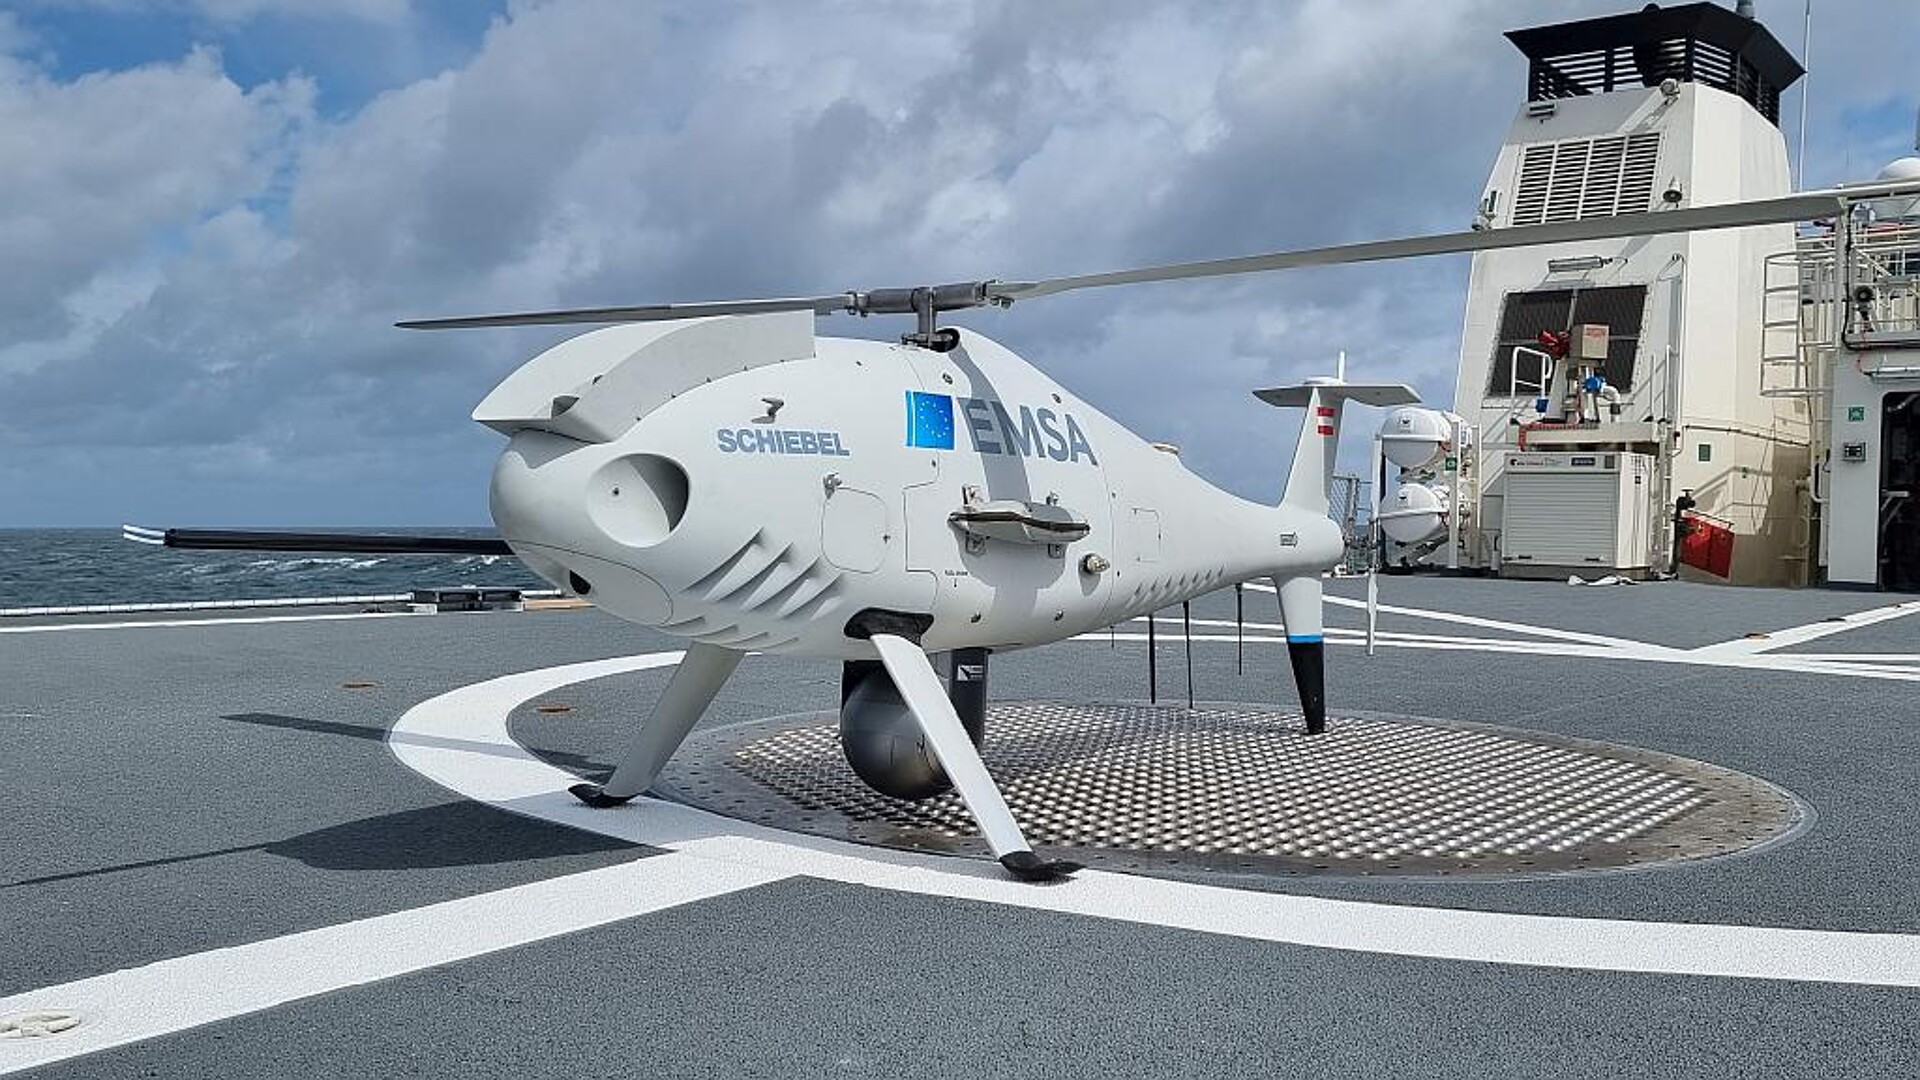 Materialien von Syensqo kommen beim unbemannten Flugsystem Camcopter S-100 von Schiebel zum Einsatz. (Foto: Syensqo)